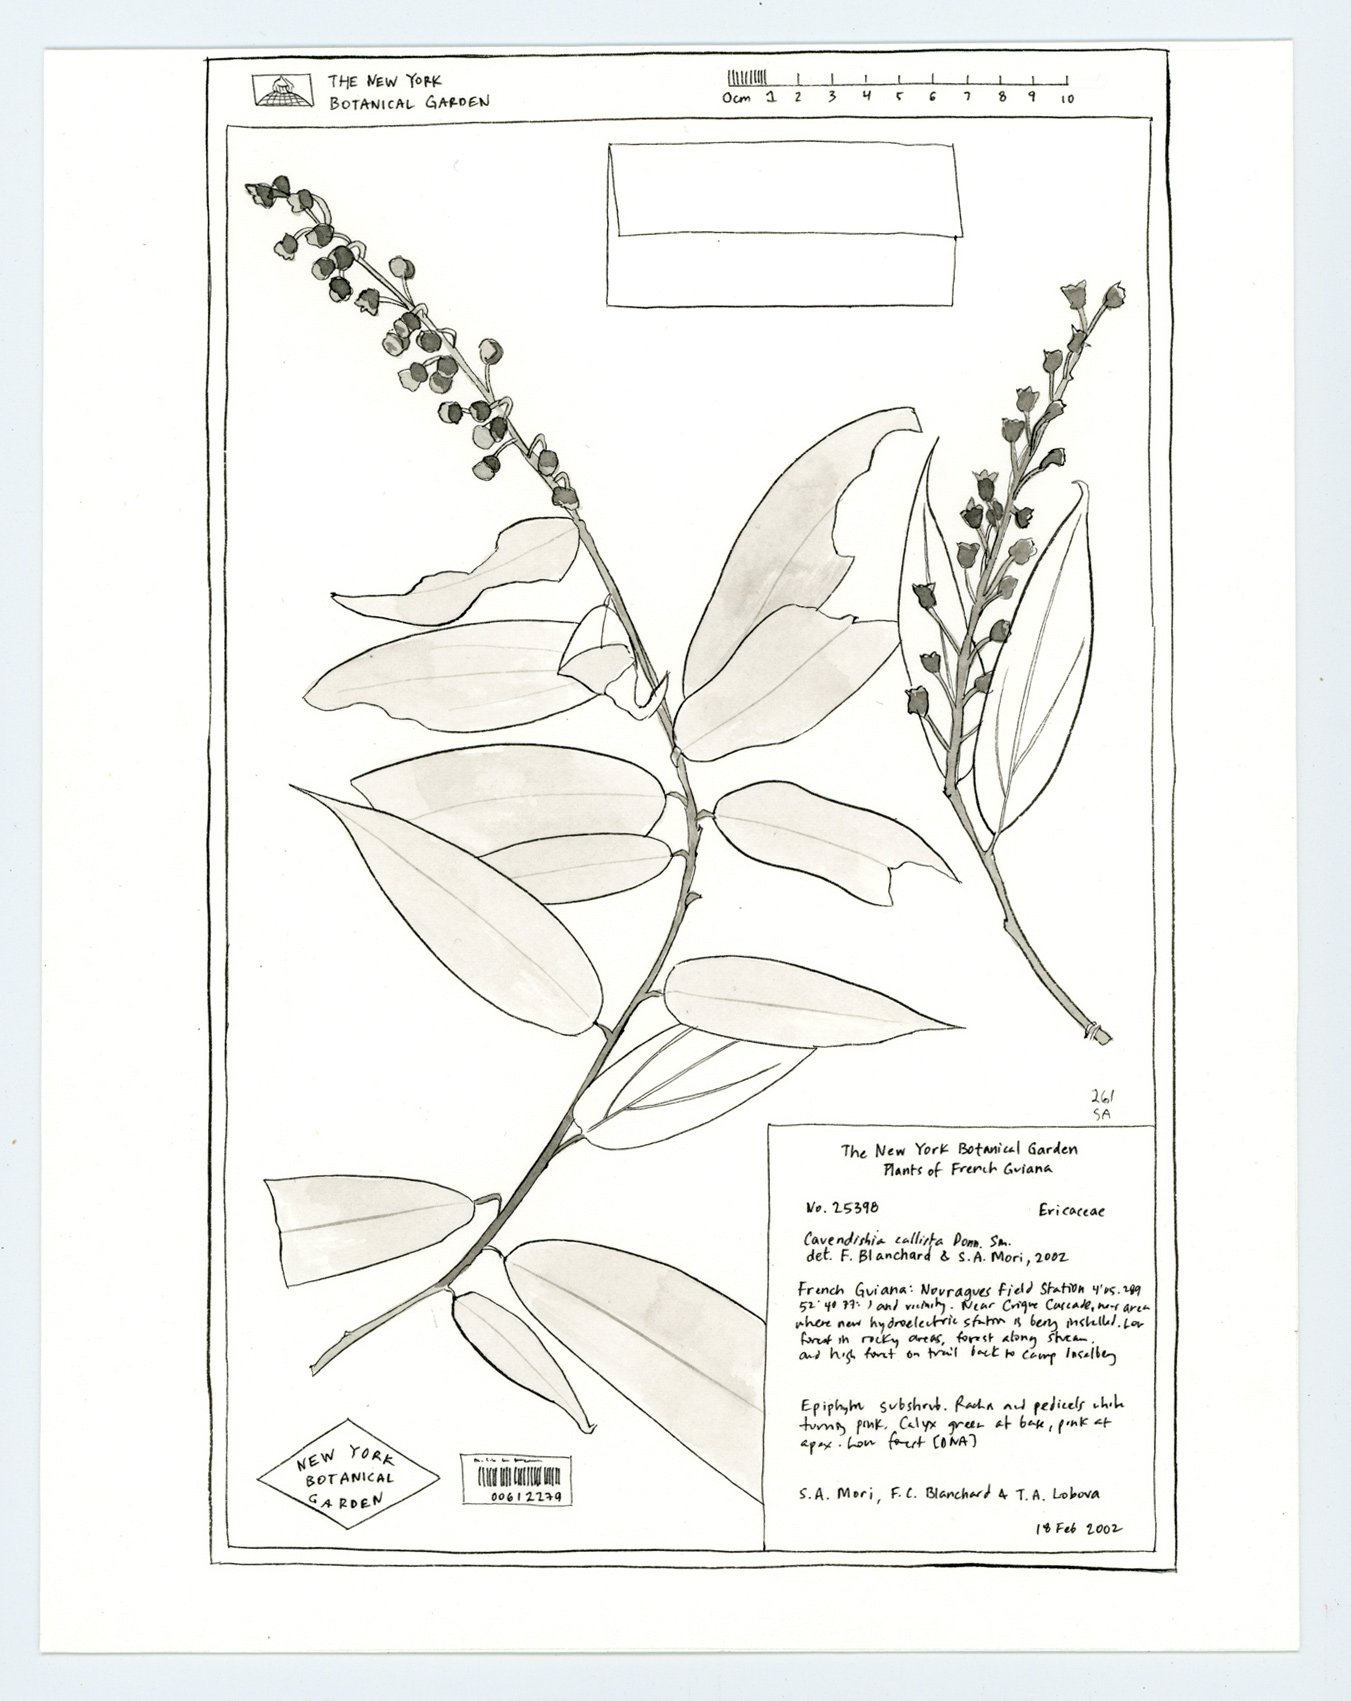 New York Botanical Garden - Herbarium specimen